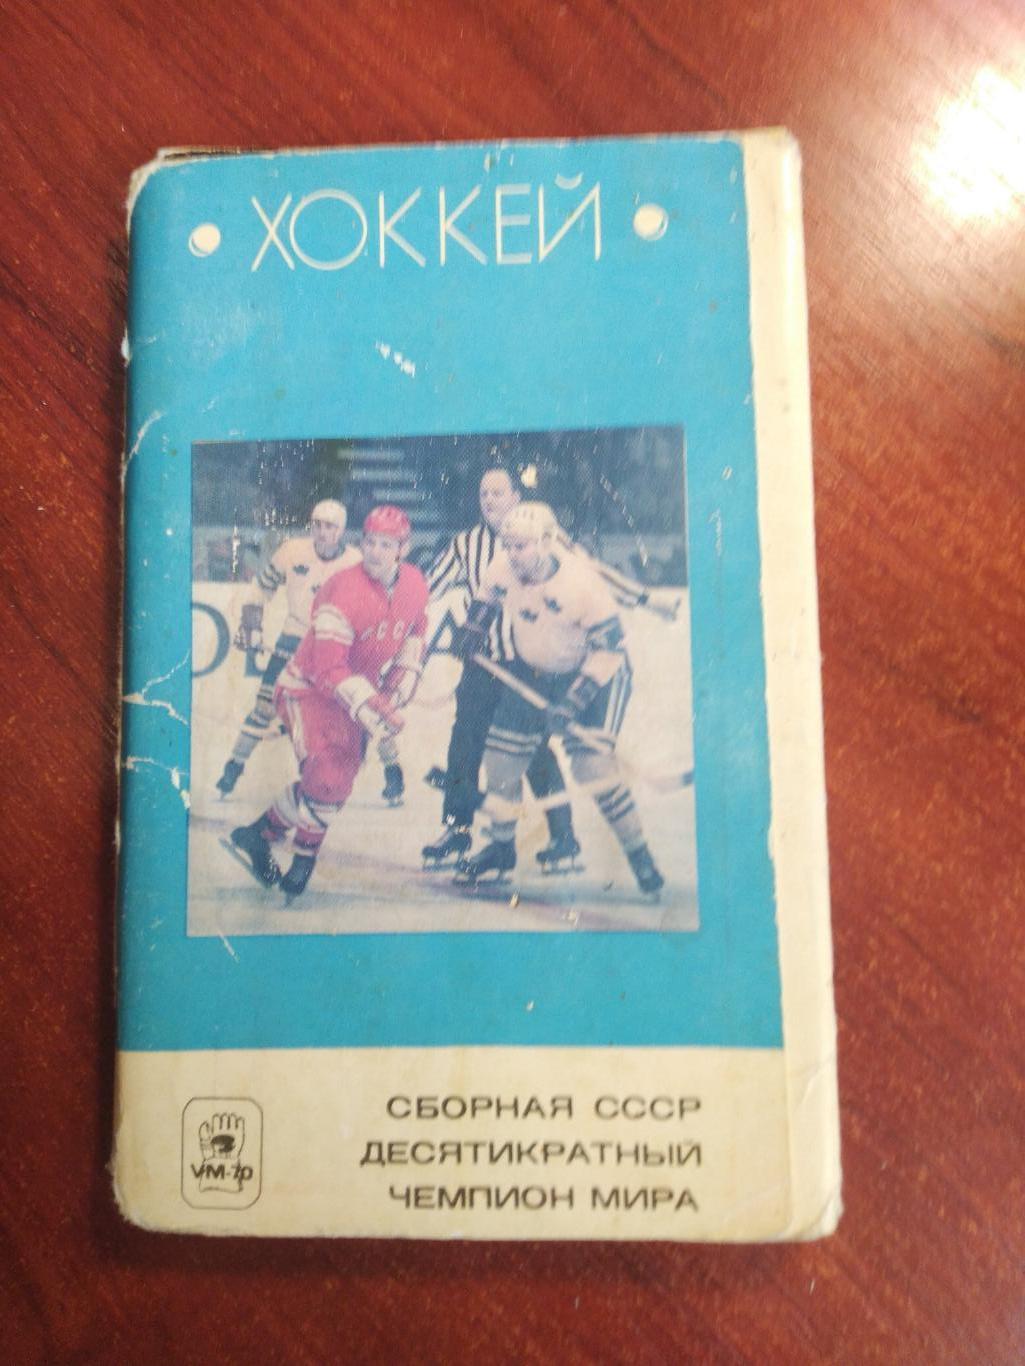 Набор открыток Хоккей Сборная СССР десятикратный Чемпионы мира 1970